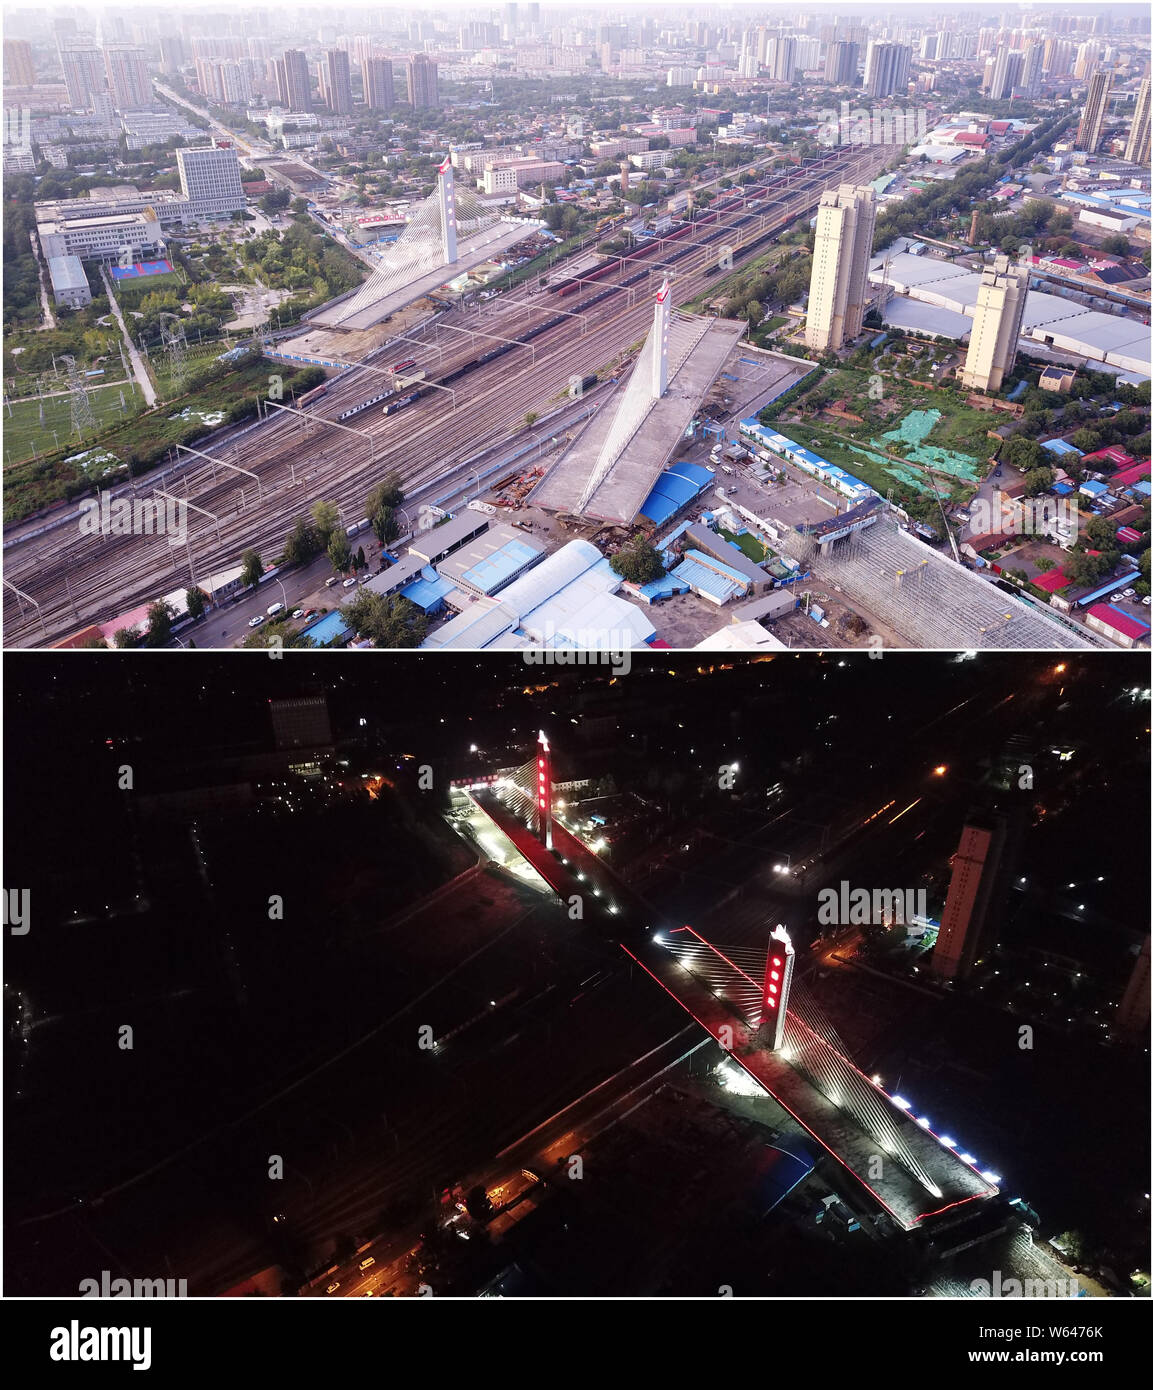 (190731) -- BEIJING, 31 juillet 2019 (Xinhua) -- ce combo photo montre deux parties d'un pont au-dessus du chemin de fer Beijing-Guangzhou avant (haut, photo prise le 29 juillet 2019) et après (bas, photo prise le 30 juillet 2019) ils sont bien tourné pour leurs postes ciblés à l'aide de la méthode de construction de fusée à Baoding, province de Hebei en Chine du nord. La Chine a adopté la méthode de construction de fusée dans la construction de nombreux ponts afin de minimiser les perturbations sur le trafic ci-dessous. La méthode aide à surmonter les contraintes de l'environnement et de trafic, tout en raccourcissant la période de construction. (Yucheng Garden Banque D'Images